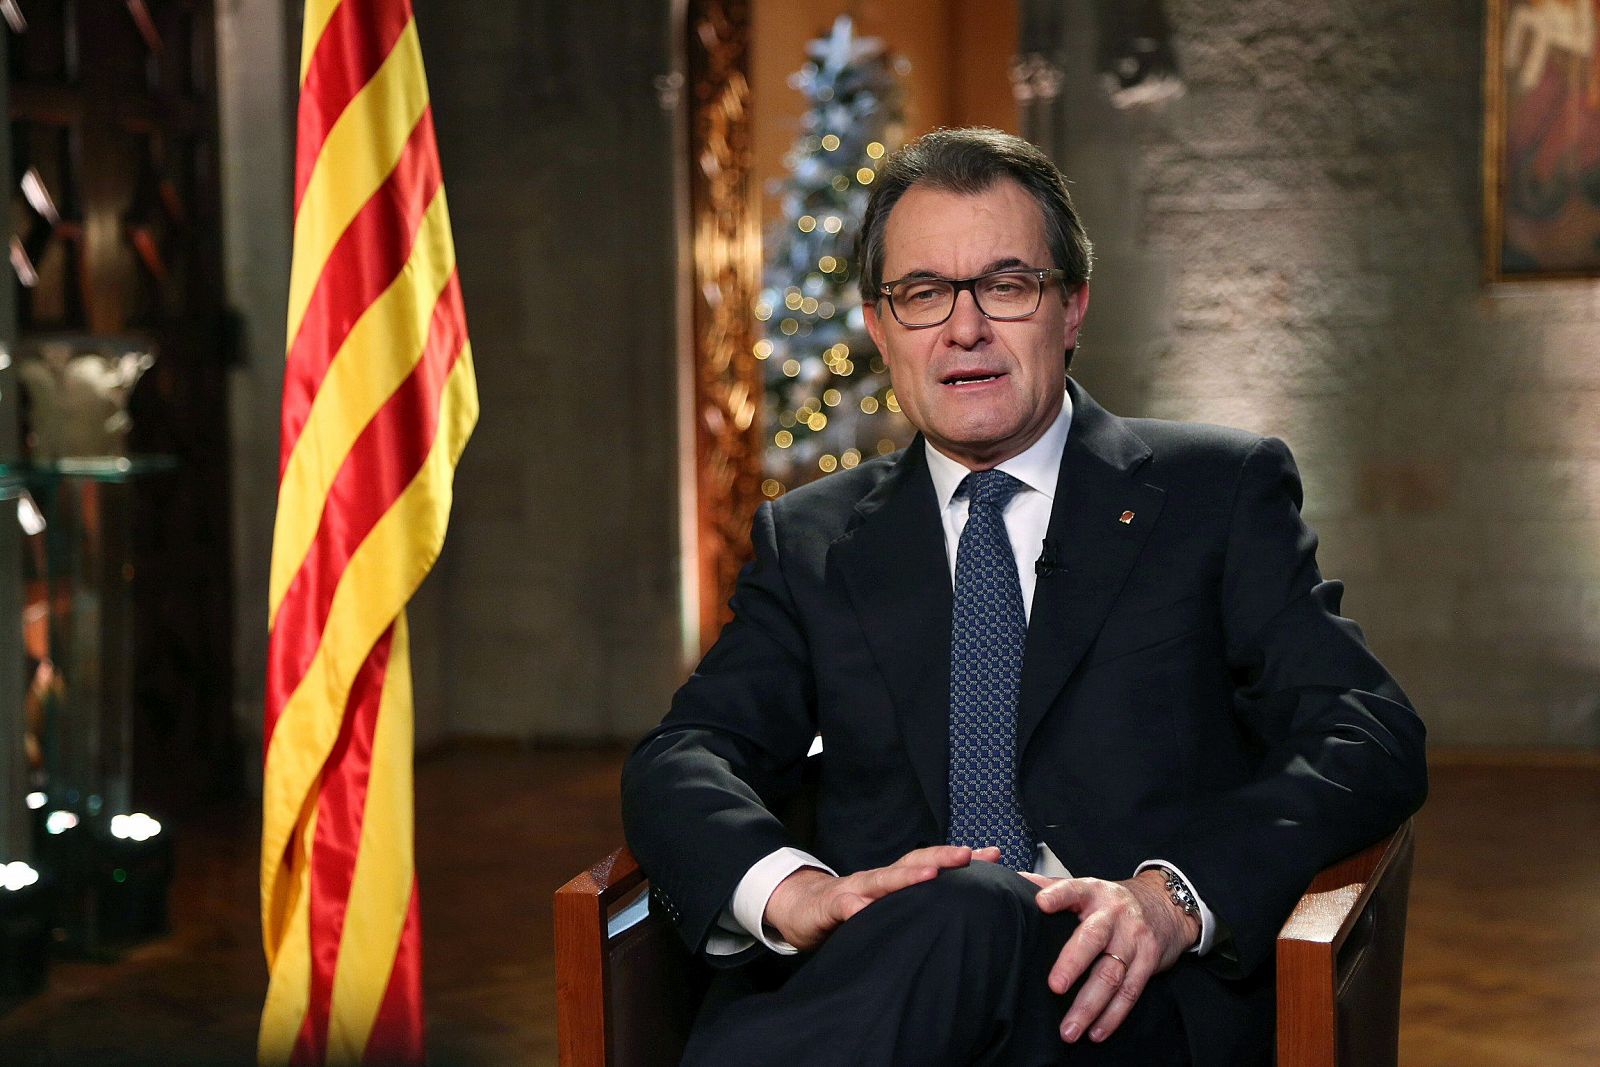 El presidnte de la Generalitat, Artur Mas, durante su mensaje institucional de Fin de Año.